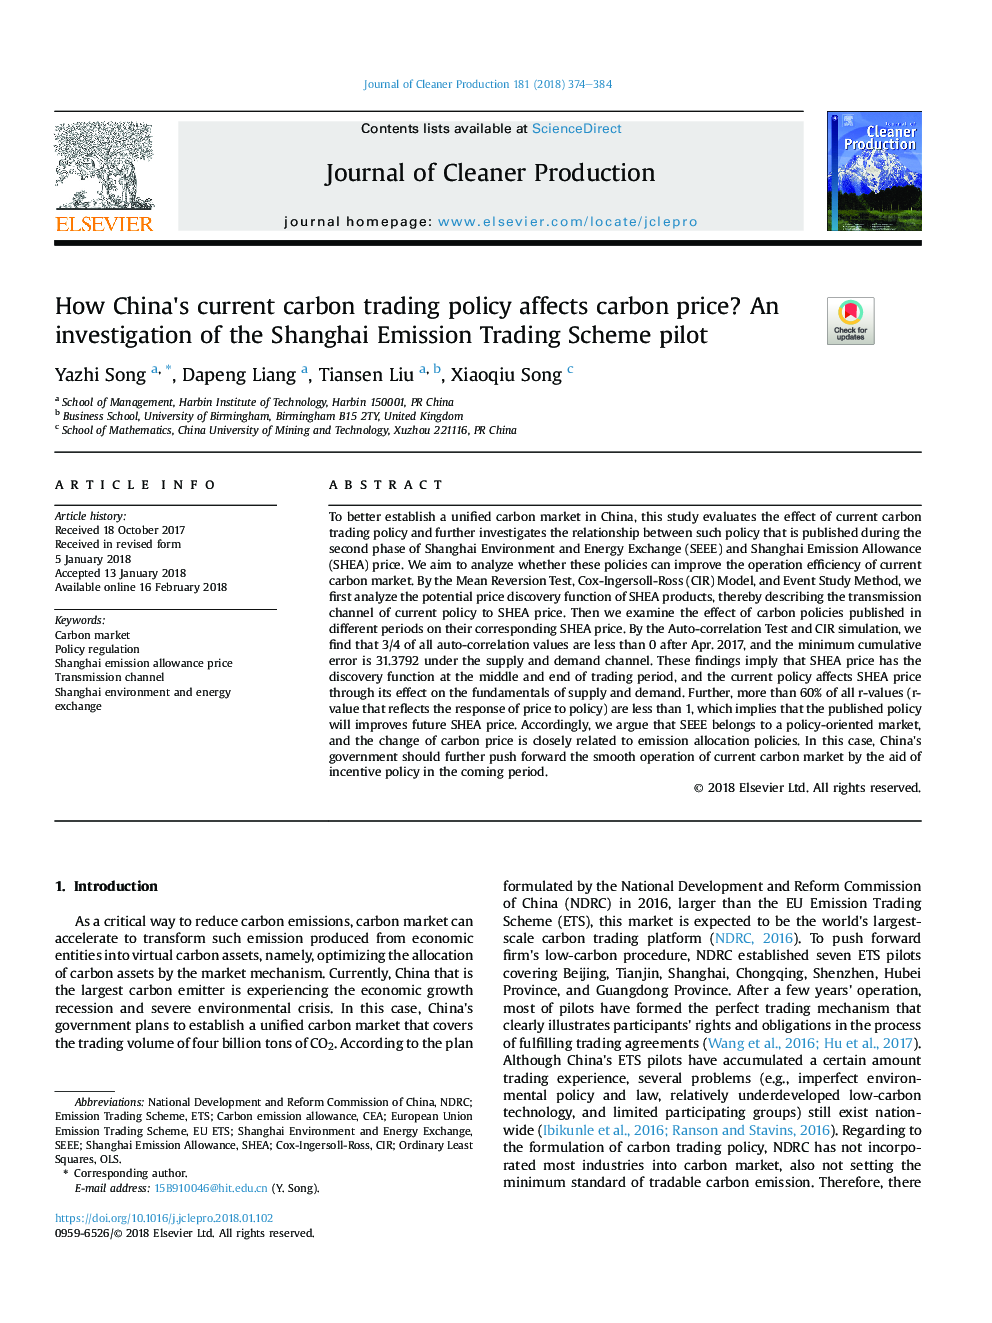 چگونه سیاست فعلی تجارت چای چی بر قیمت کربن اثر می گذارد؟ تحقیق در مورد طرح خلع سلاح صادرات شانگهای 